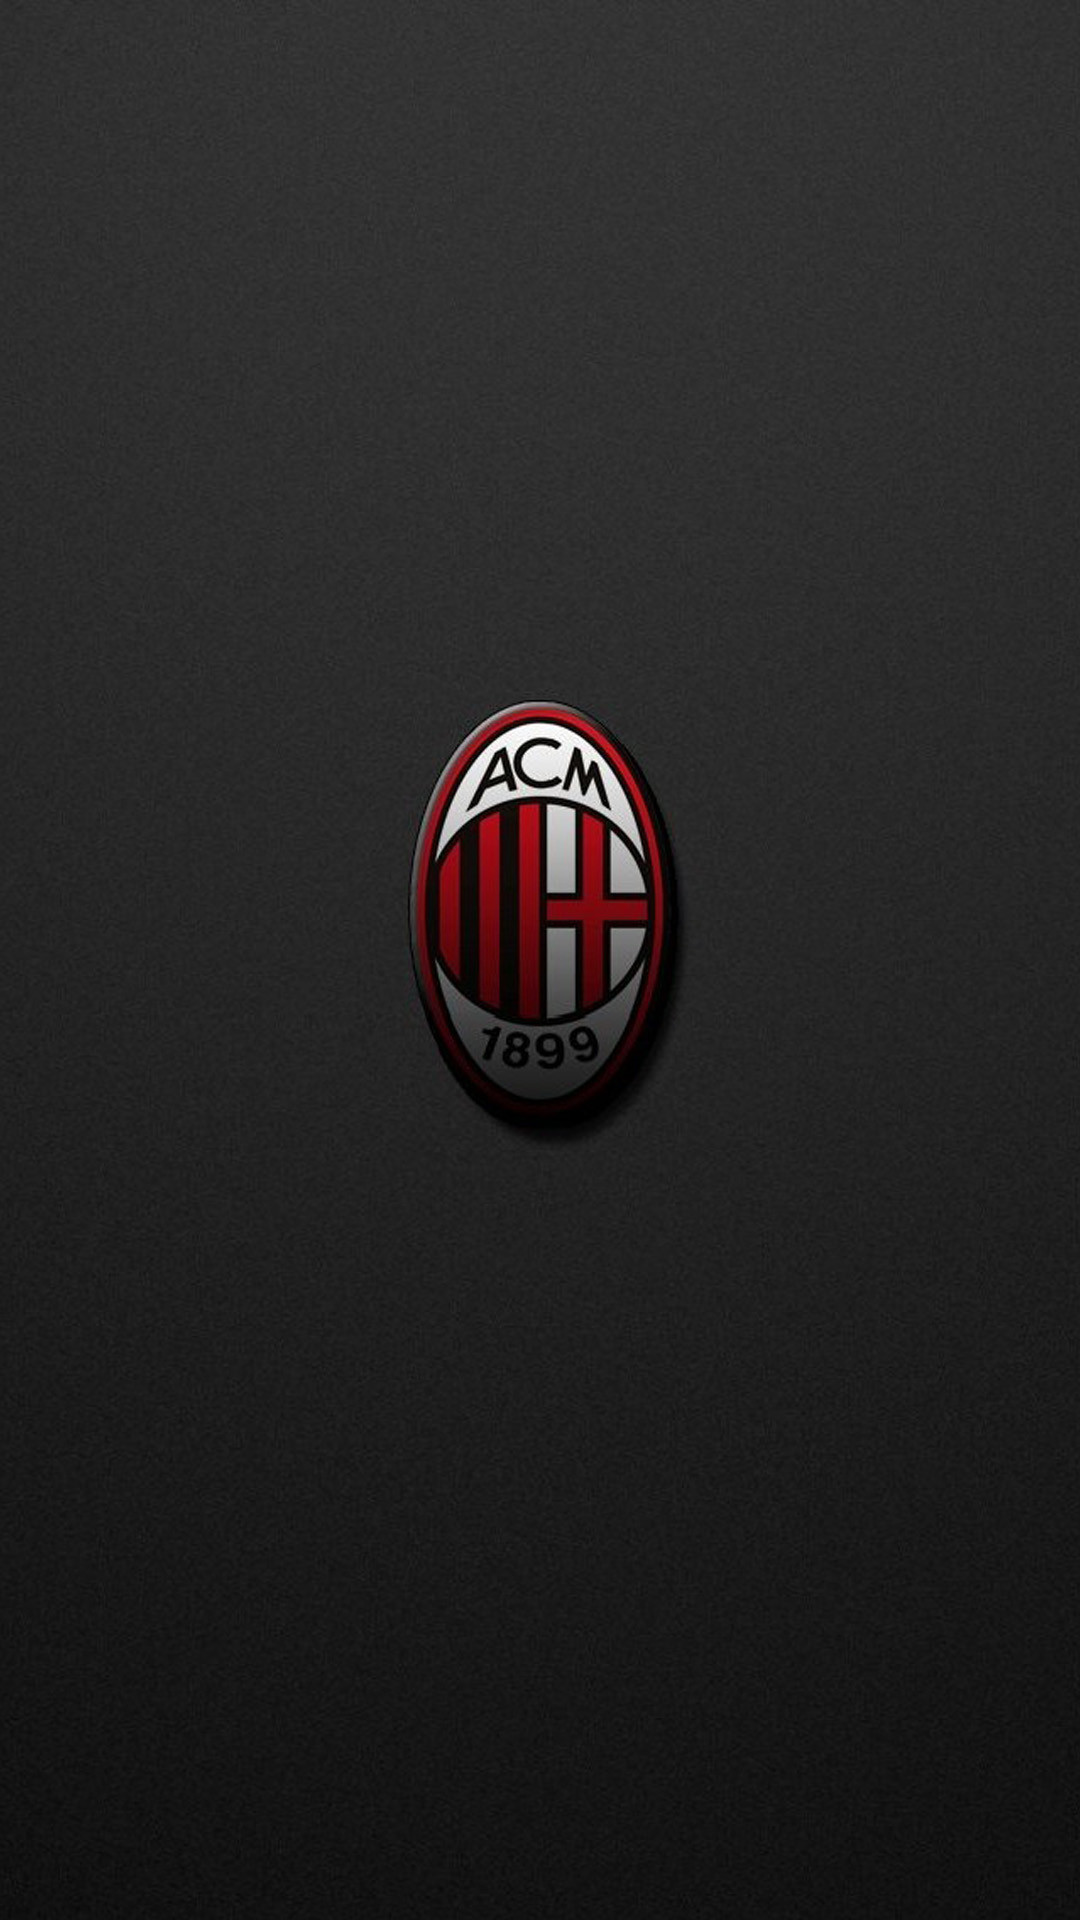 1080x1920 AC Milan team logo Nexus 5 Wallpapers